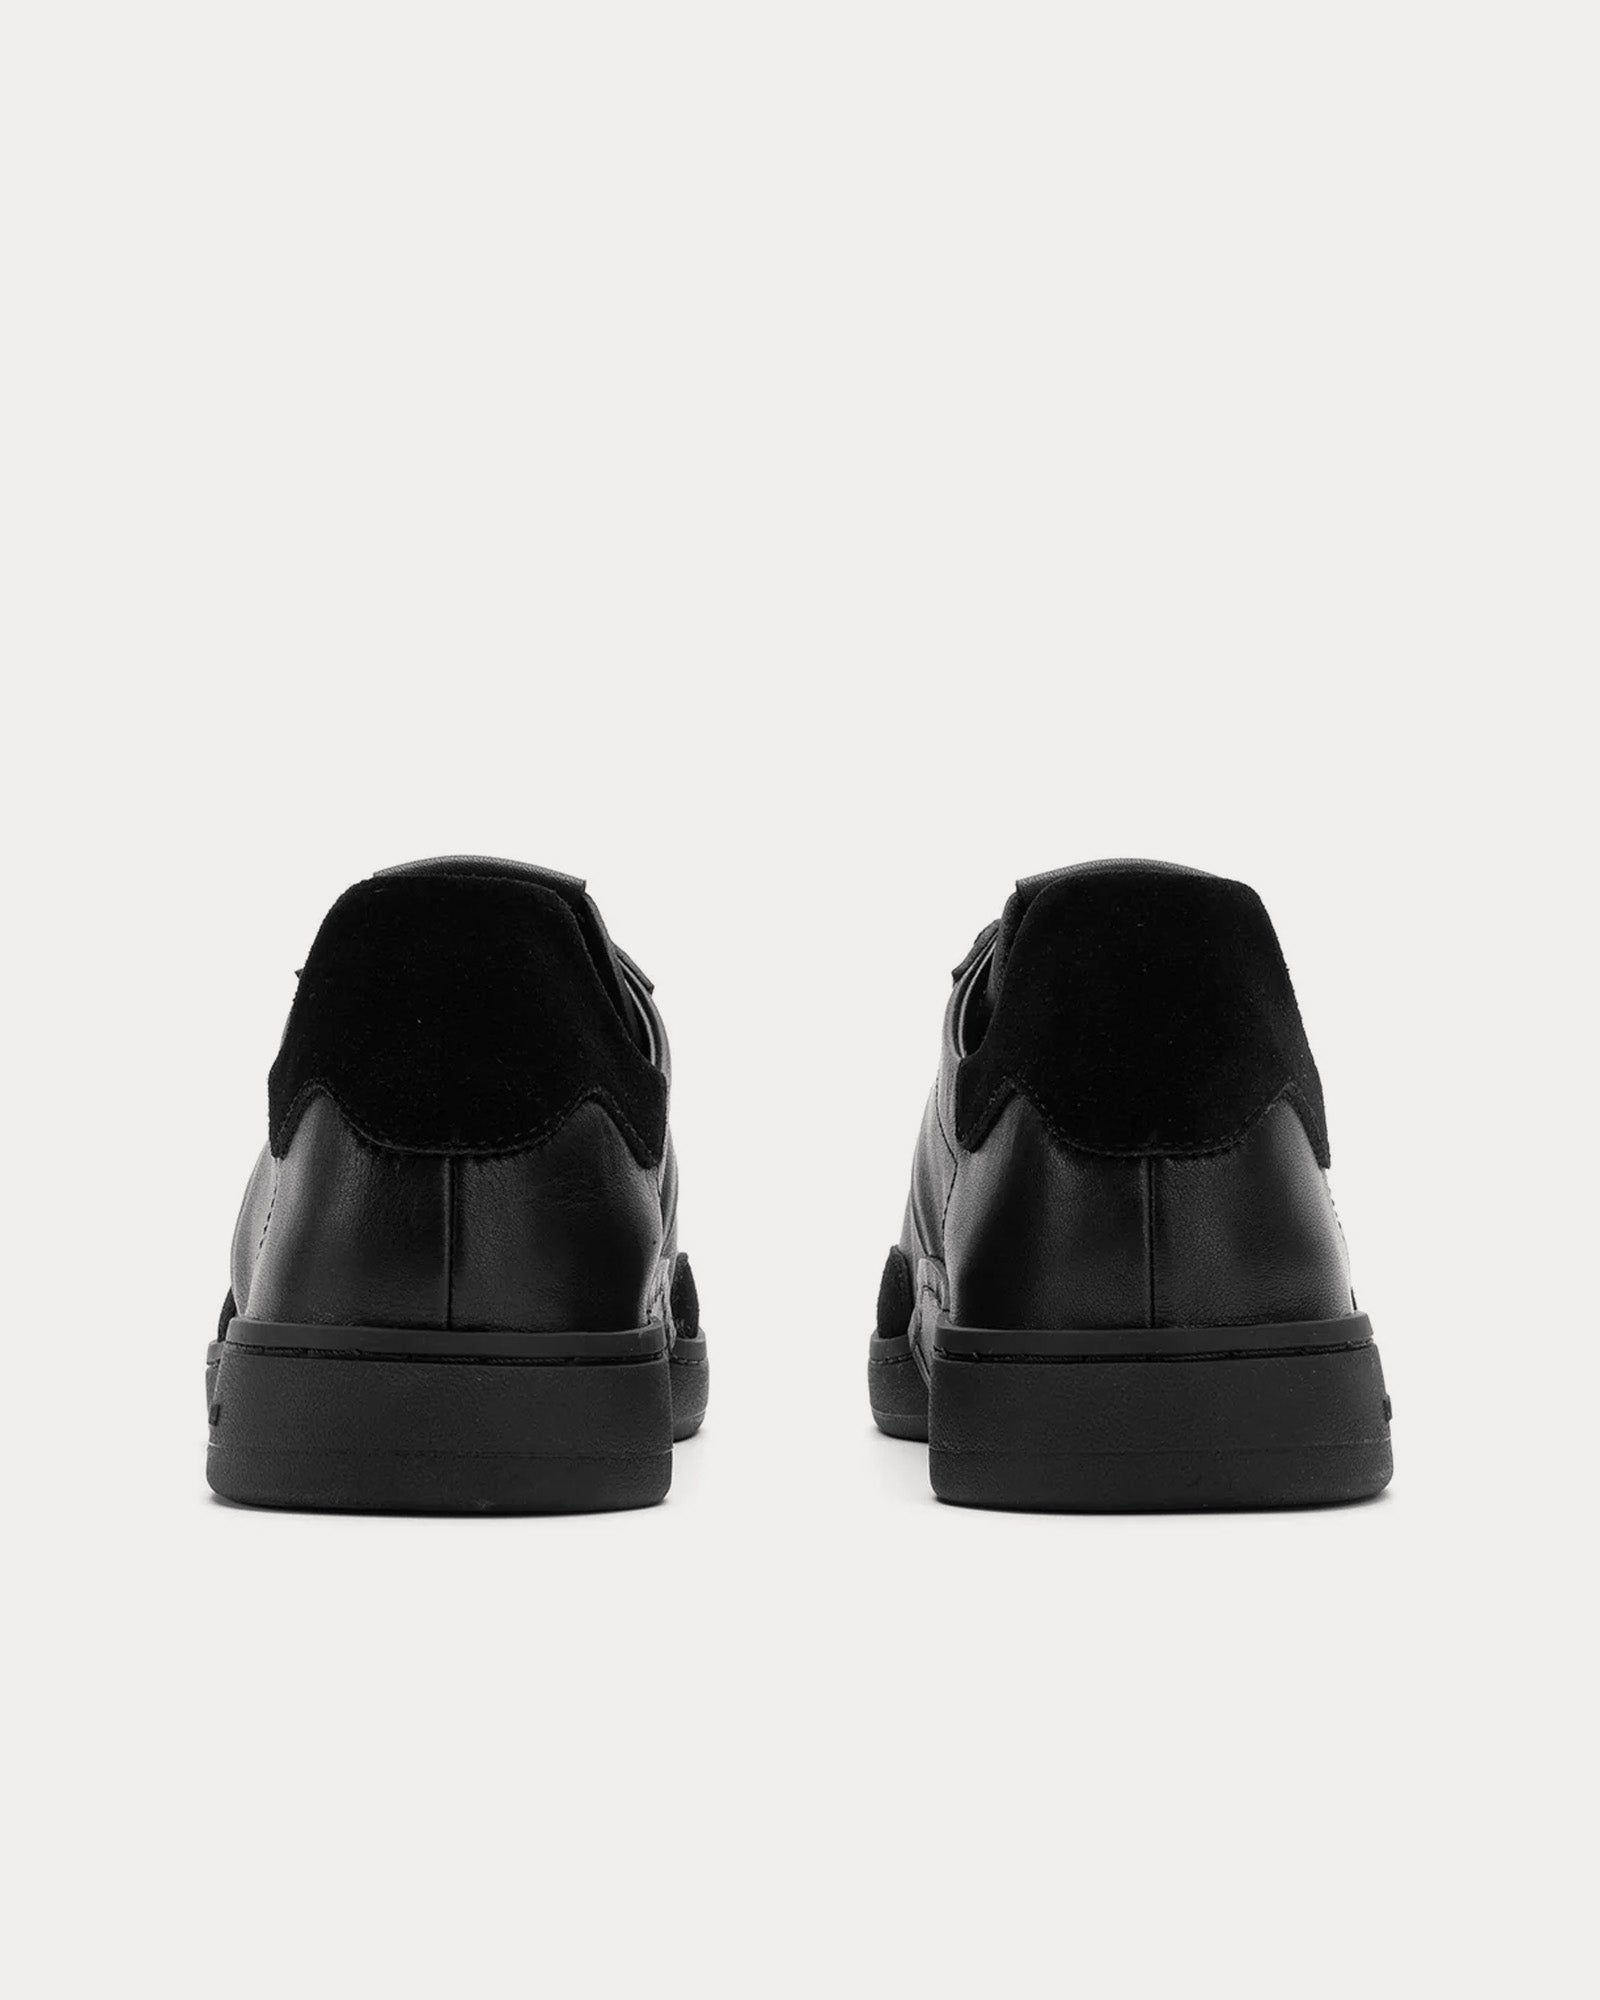 Foot Industry - GAT OP Leather Black Low Top Sneakers